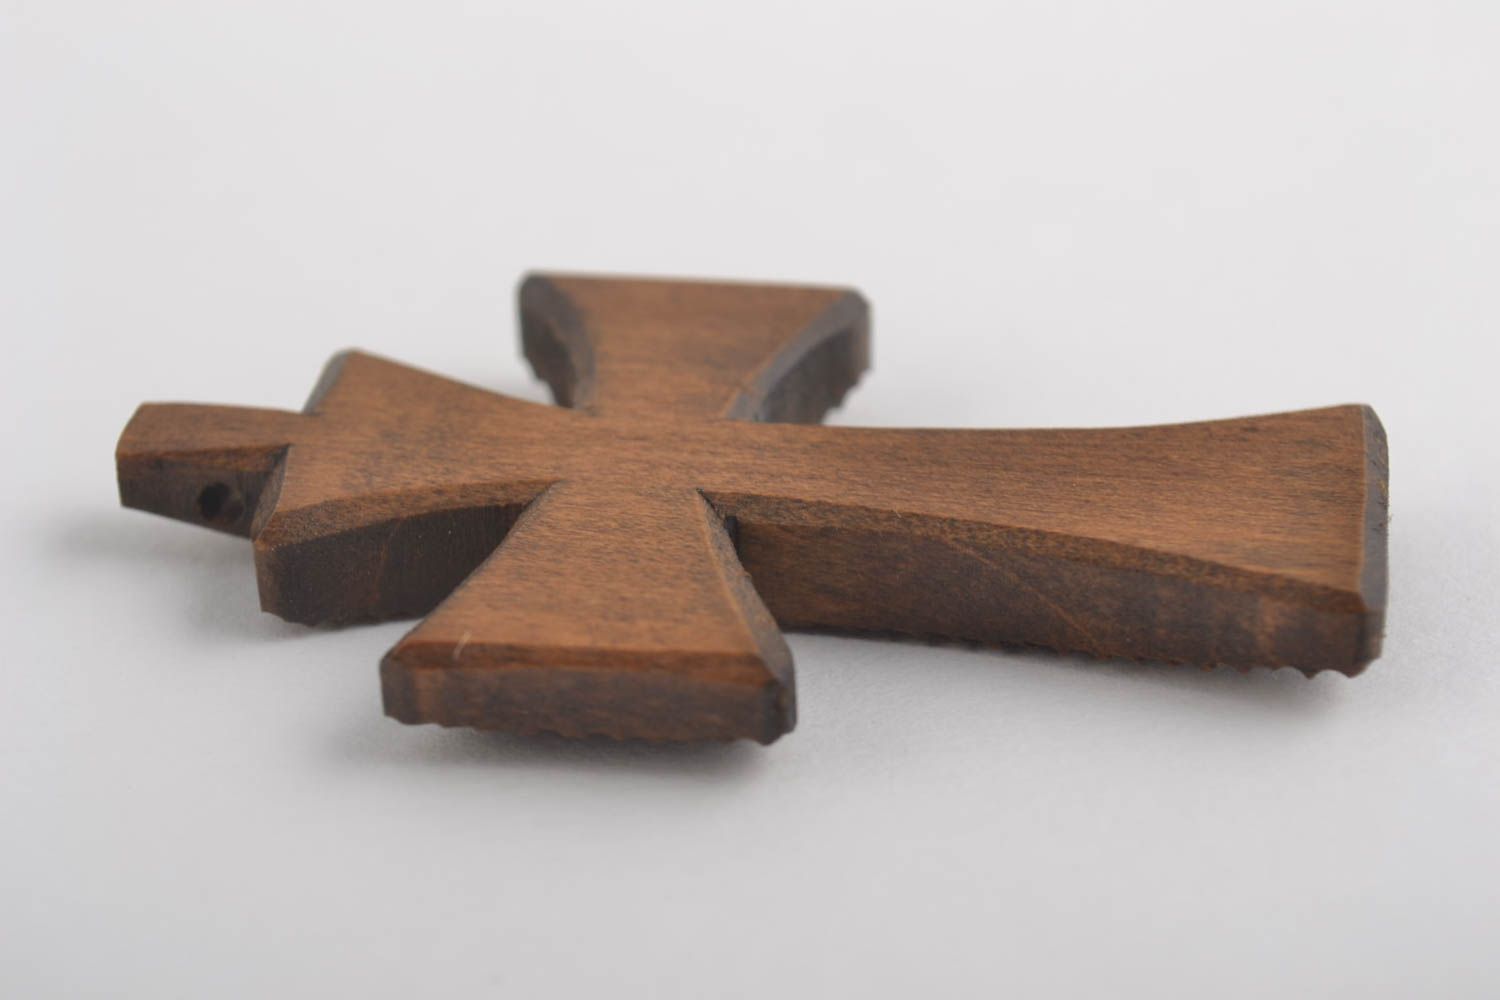 Крест ручной работы нательный крестик деревянный крестик со скорлупой крашенки фото 2